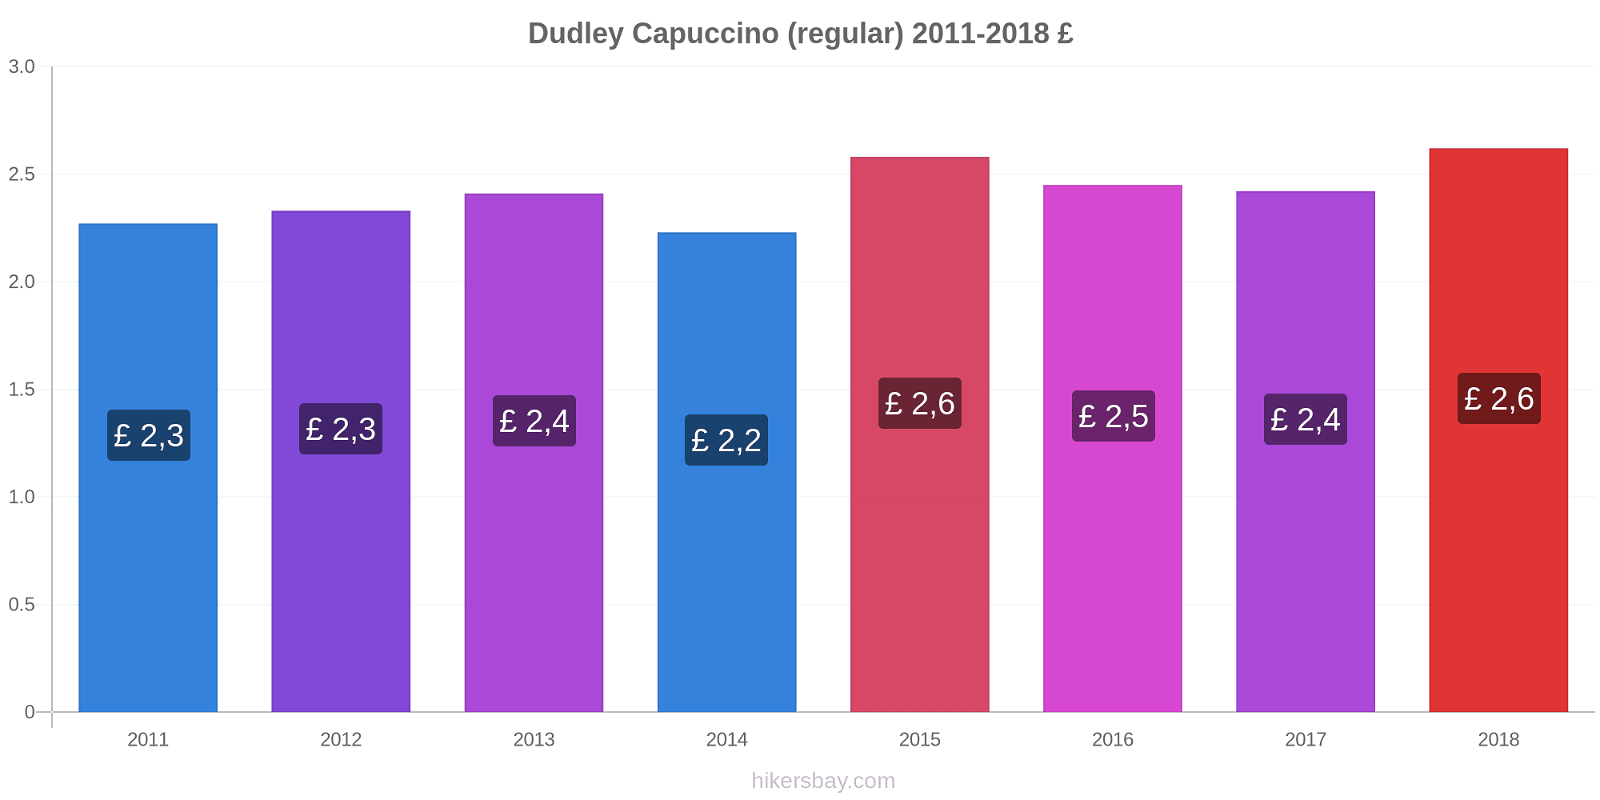 Dudley variação de preço Capuccino (regular) hikersbay.com